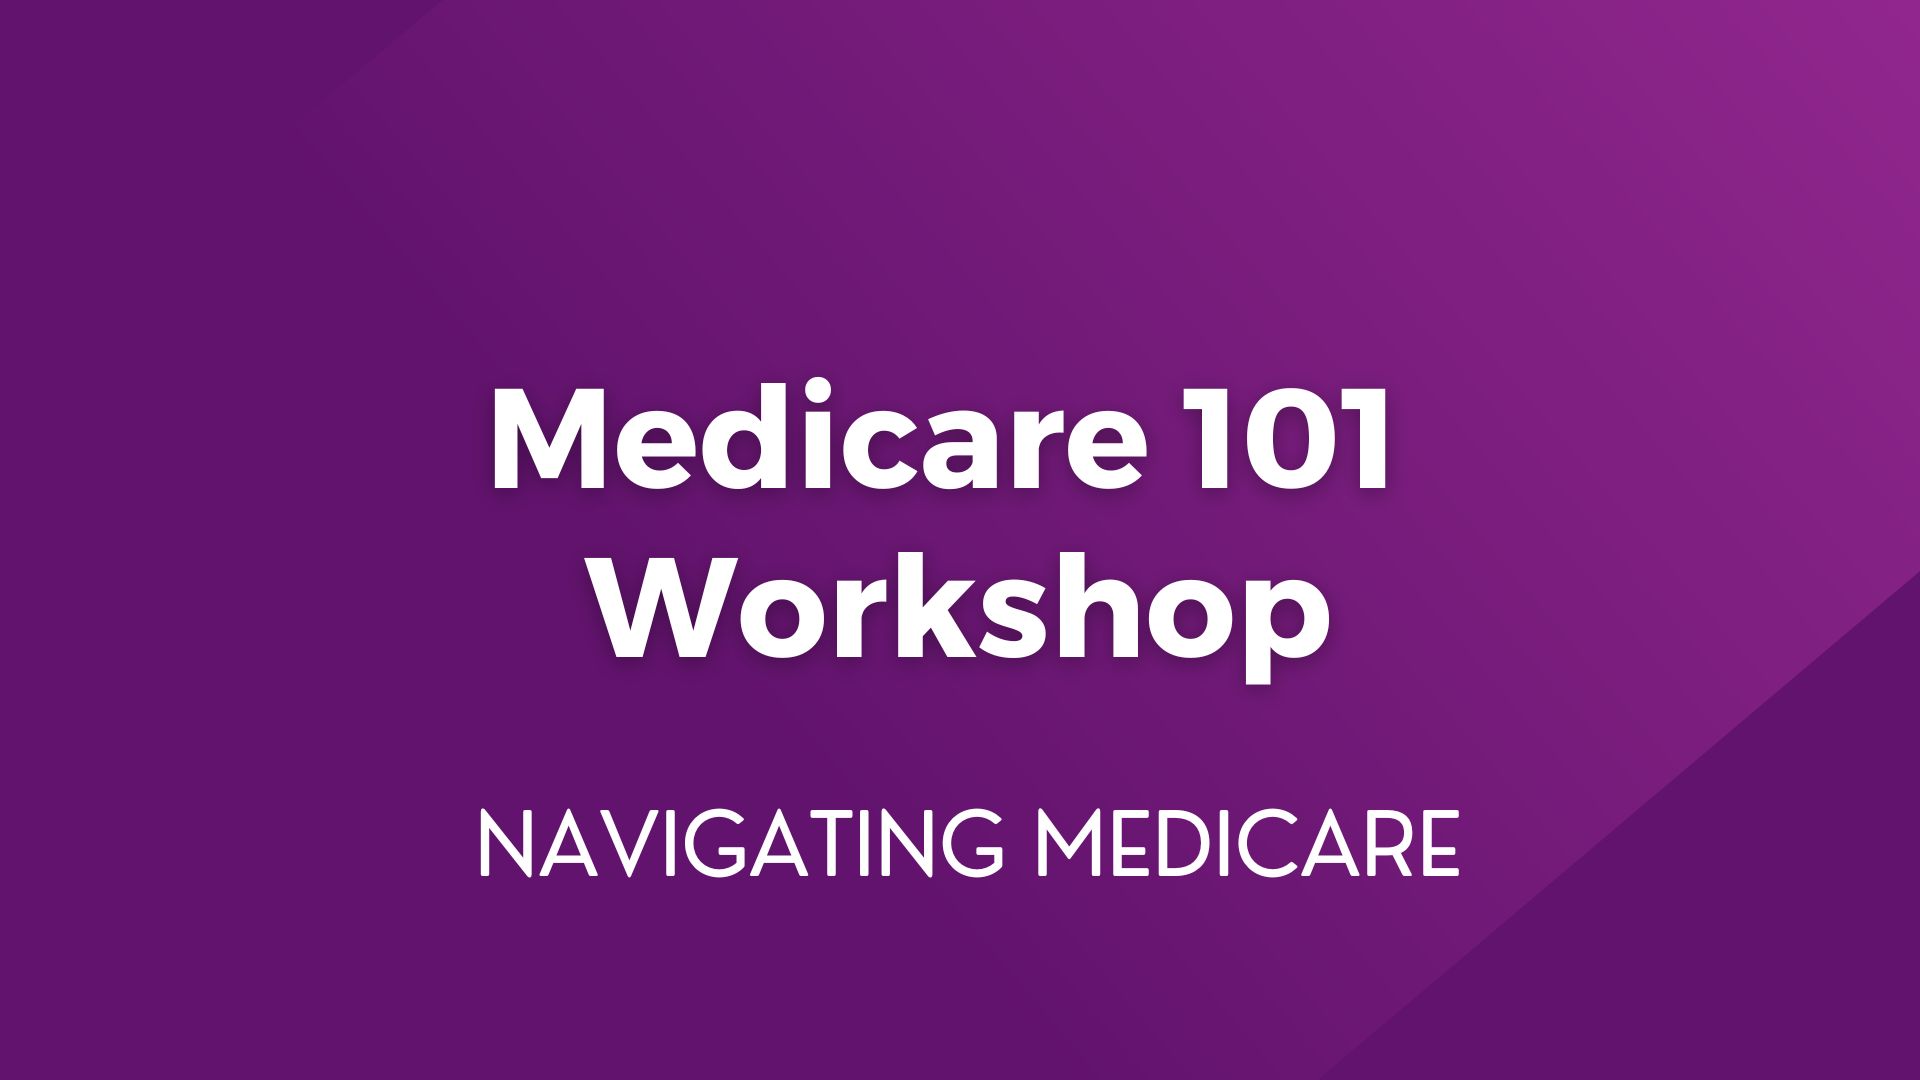 Medicare 101 Workshop – January 11